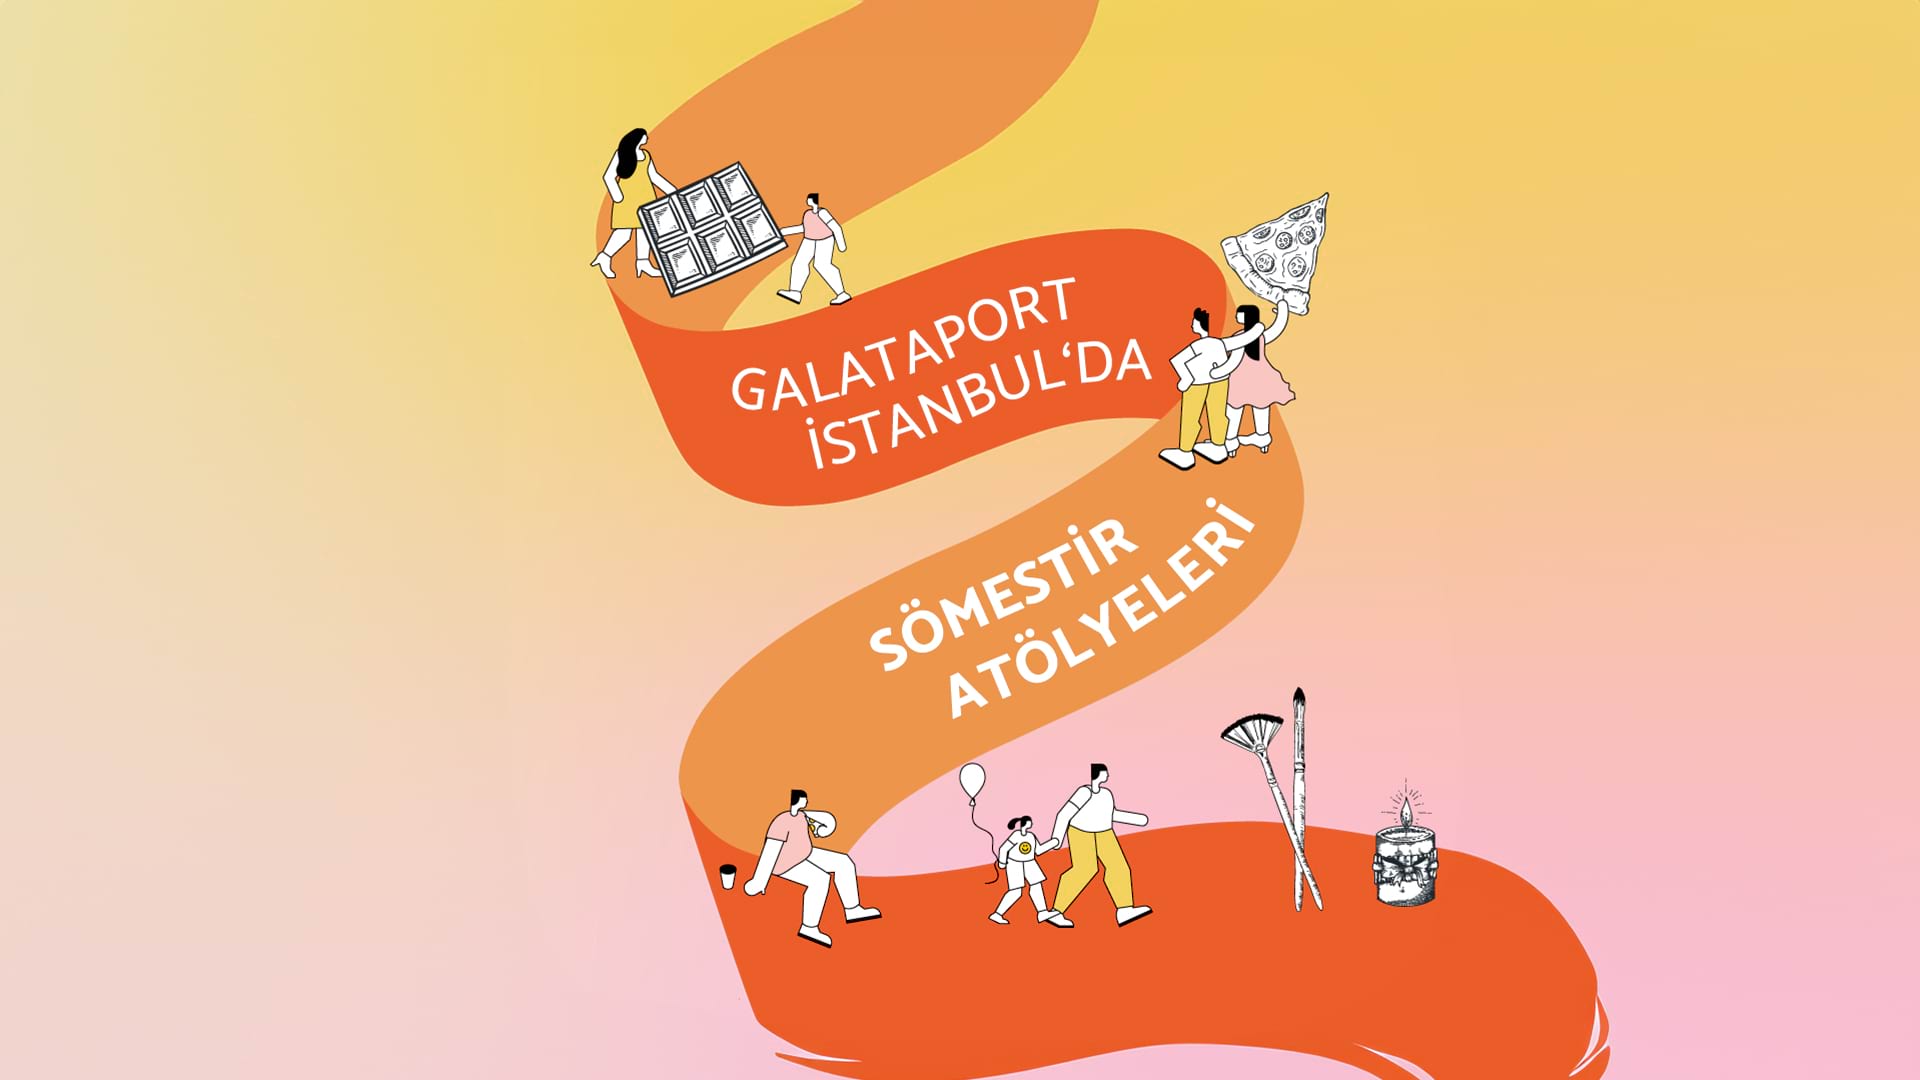 Galataport İstanbul'da Sömestir Atölyeleri